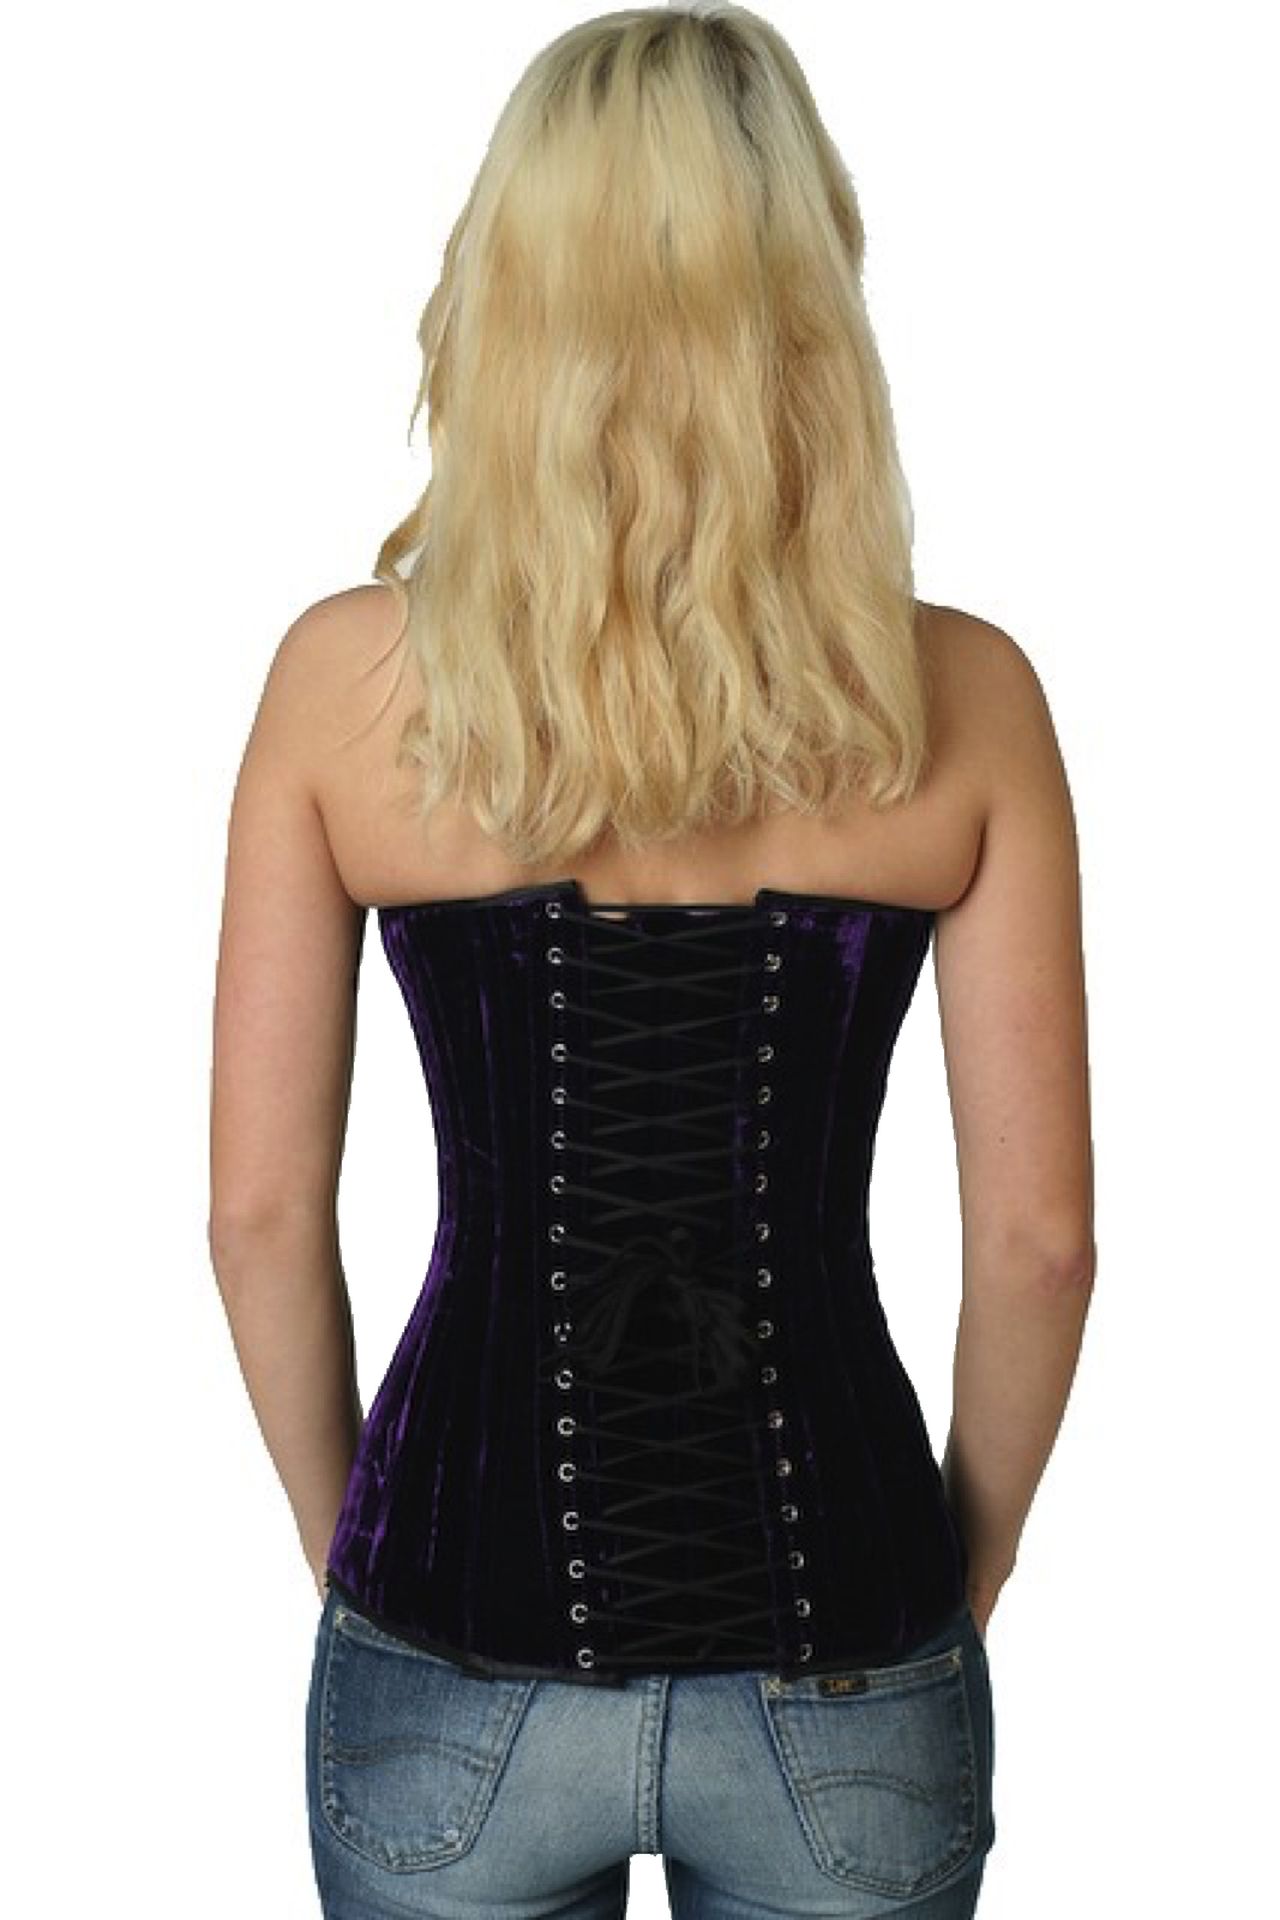 Fluweel corset paars volborst Korset vy65